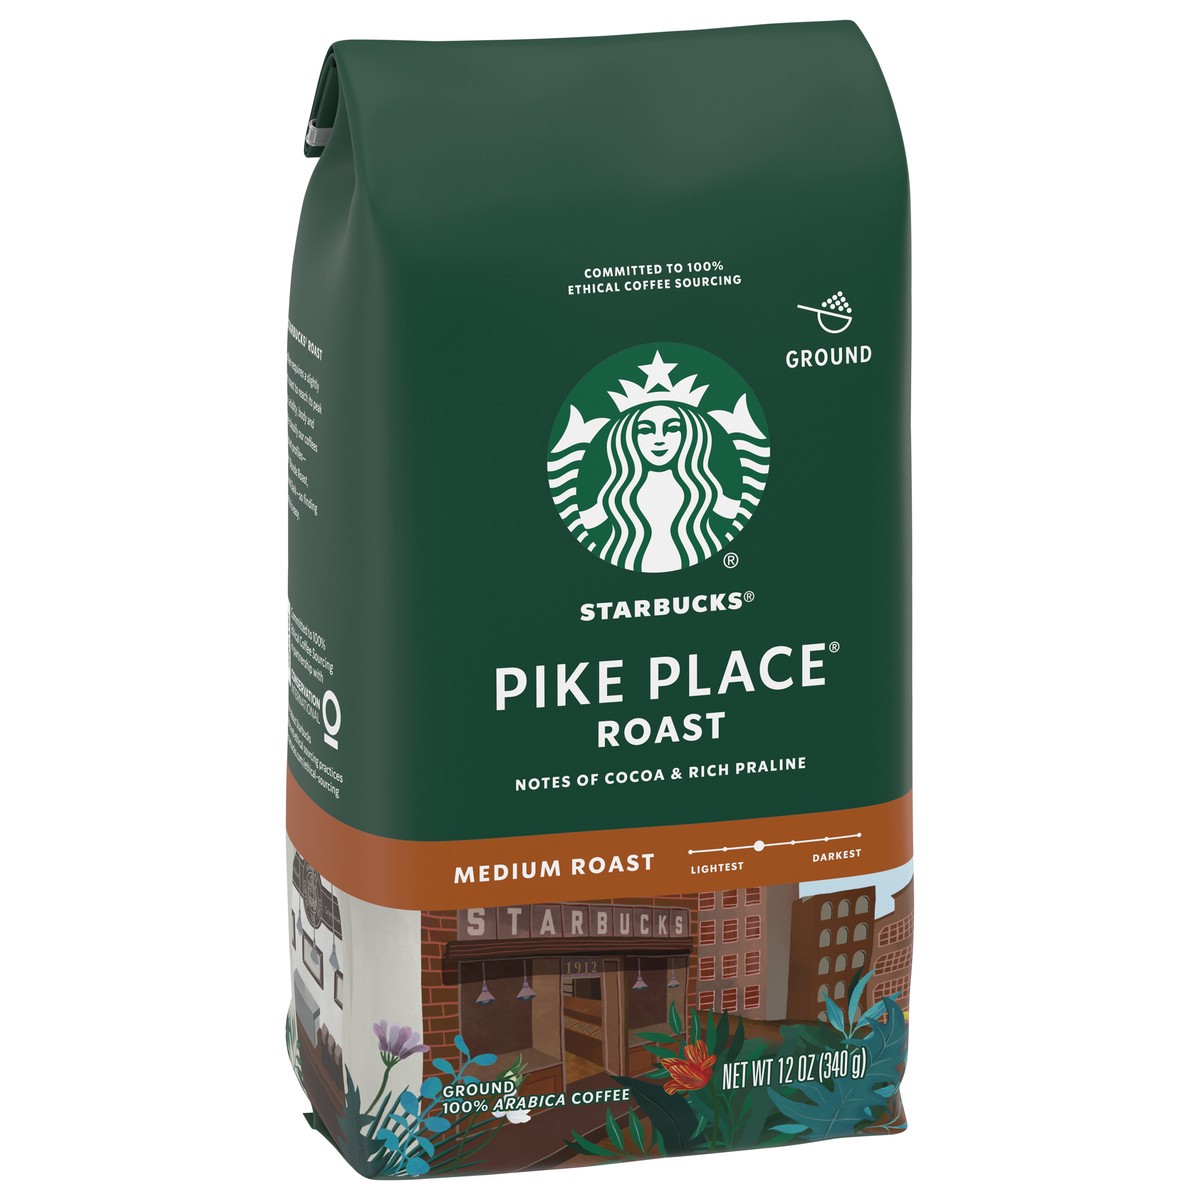 slide 4 of 9, Starbucks Ground Coffee, Medium Roast Coffee, Pike Place Roast, 100% Arabica, 1 Bag - 12 oz, 12 oz